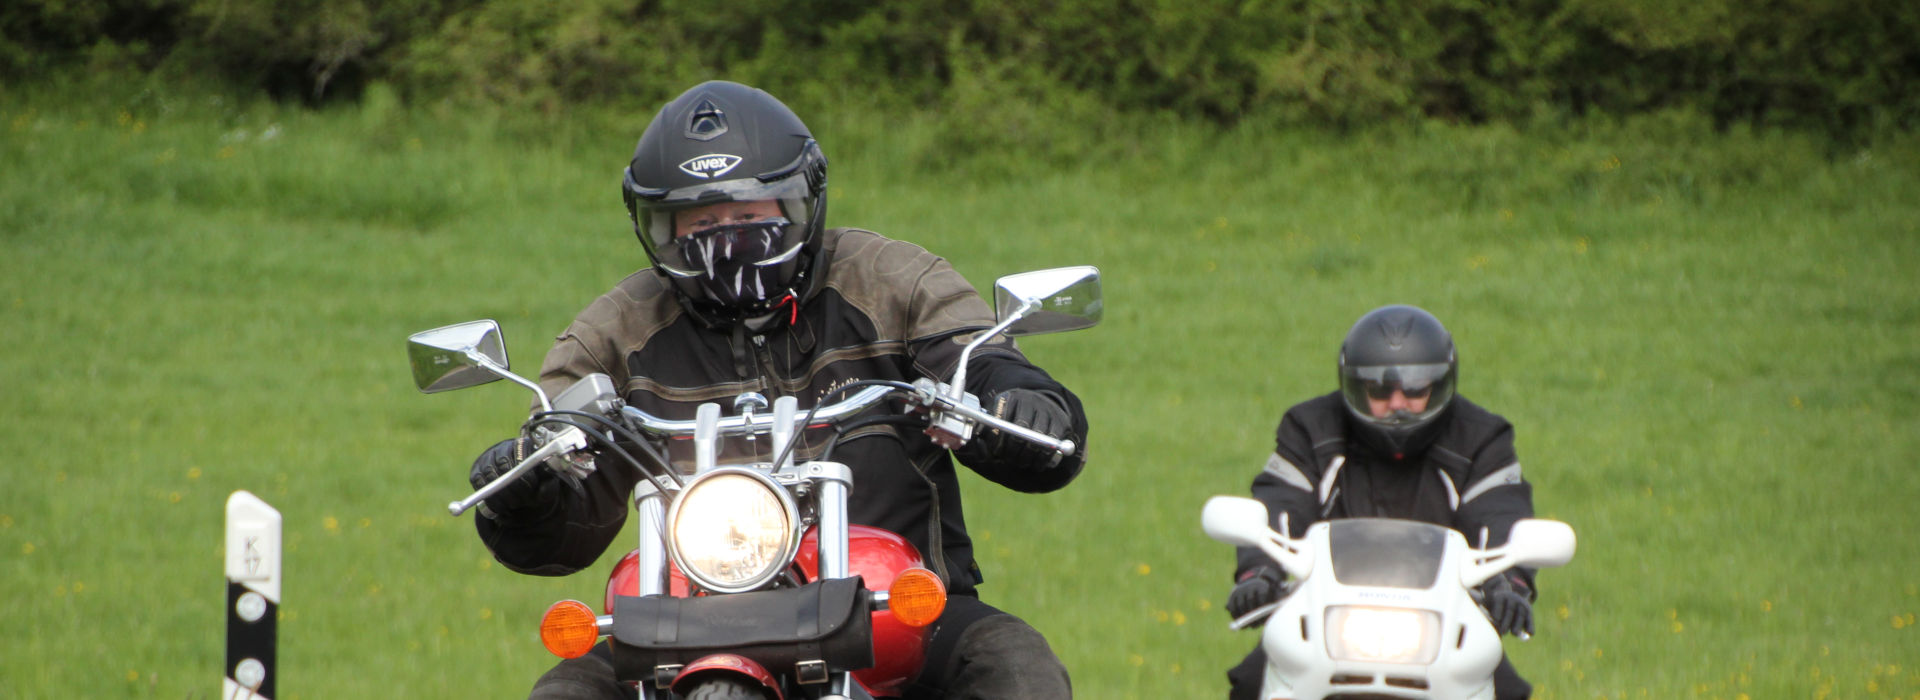 Motorrijschool Motorrijbewijspoint Roosendaal motorrijlessen